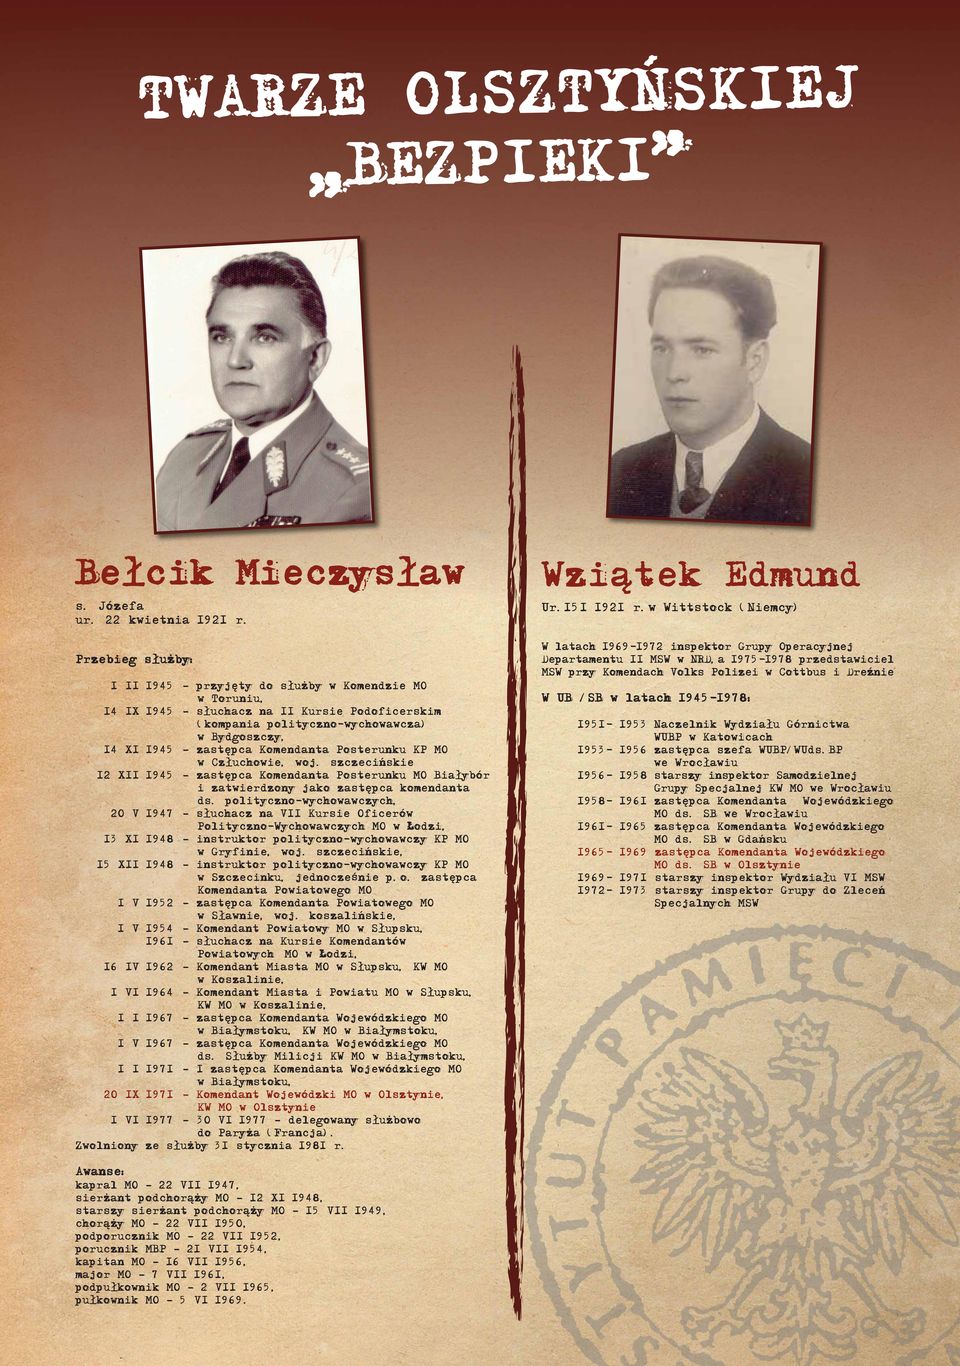 Człuchowie, woj. szczecińskie 12 XII 1945 zastępca Komendanta Posterunku MO Białybór i zatwierdzony jako zastępca komendanta ds.